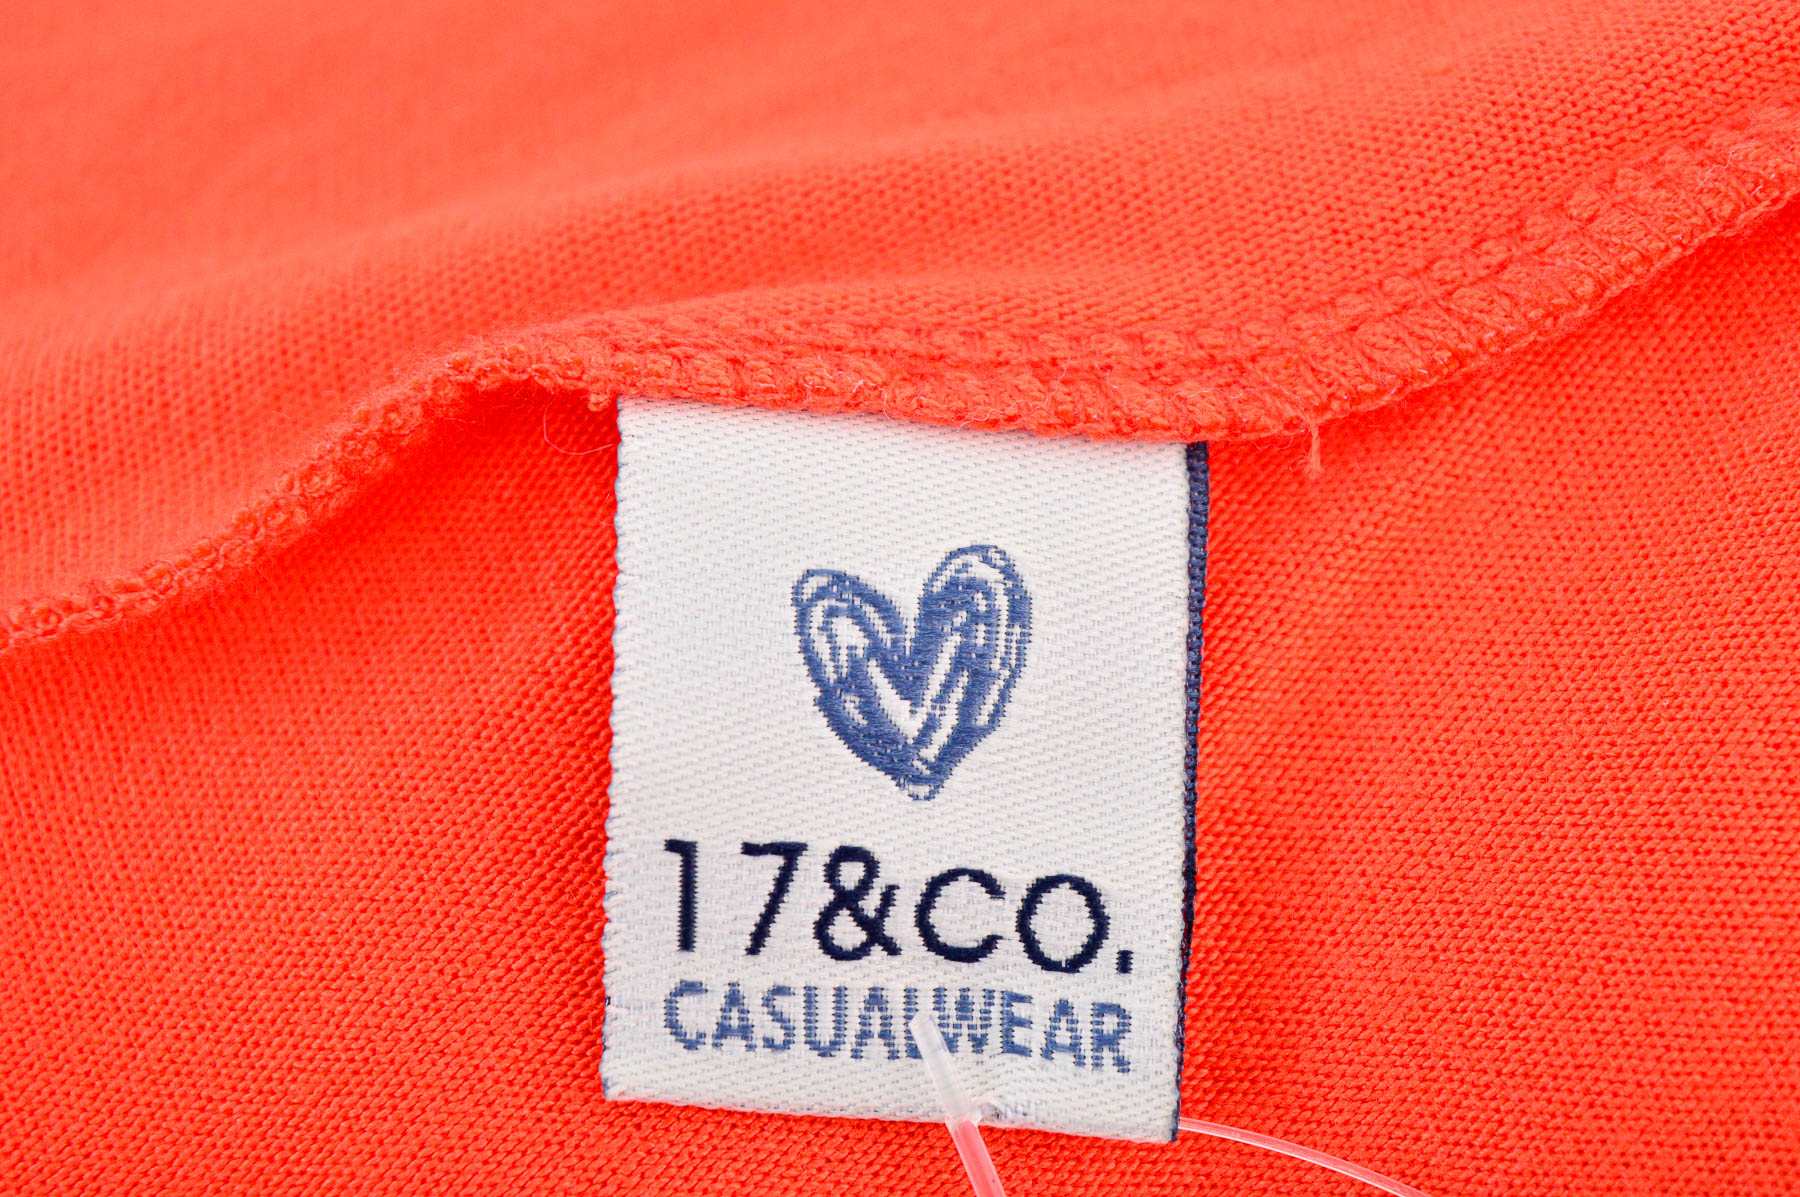 Cardigan / Jachetă de damă - 17&CO. CASUALWEAR - 2